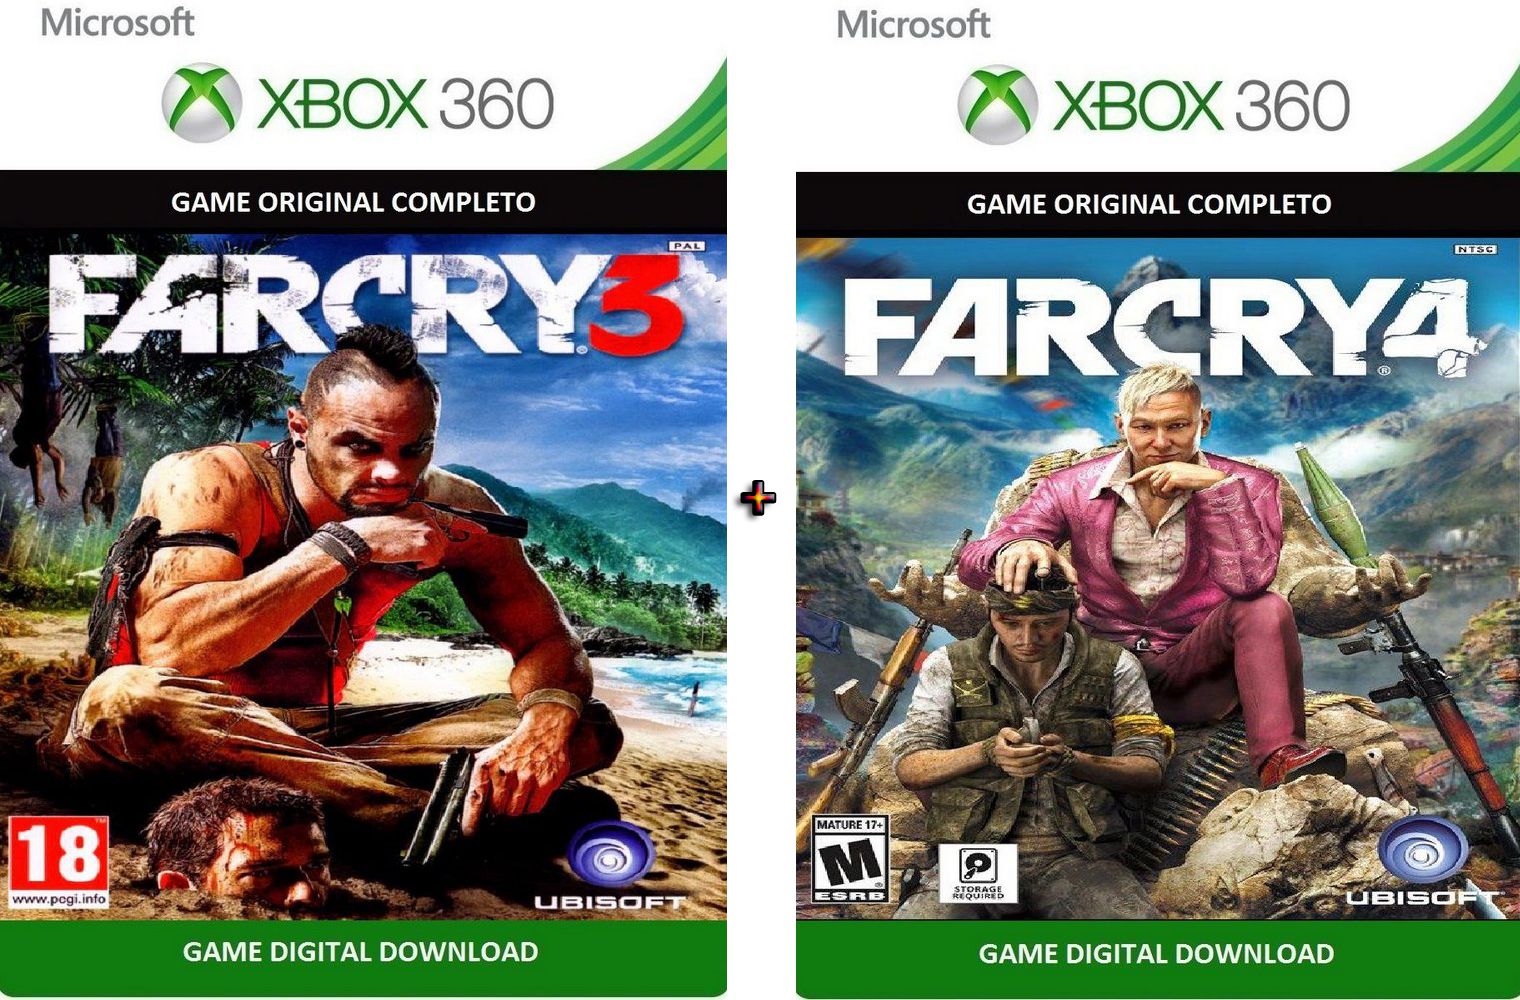 Jogos Xbox 360 transferência de Licença Mídia Digital - ASSASSINS CREED 3  DUBLADO